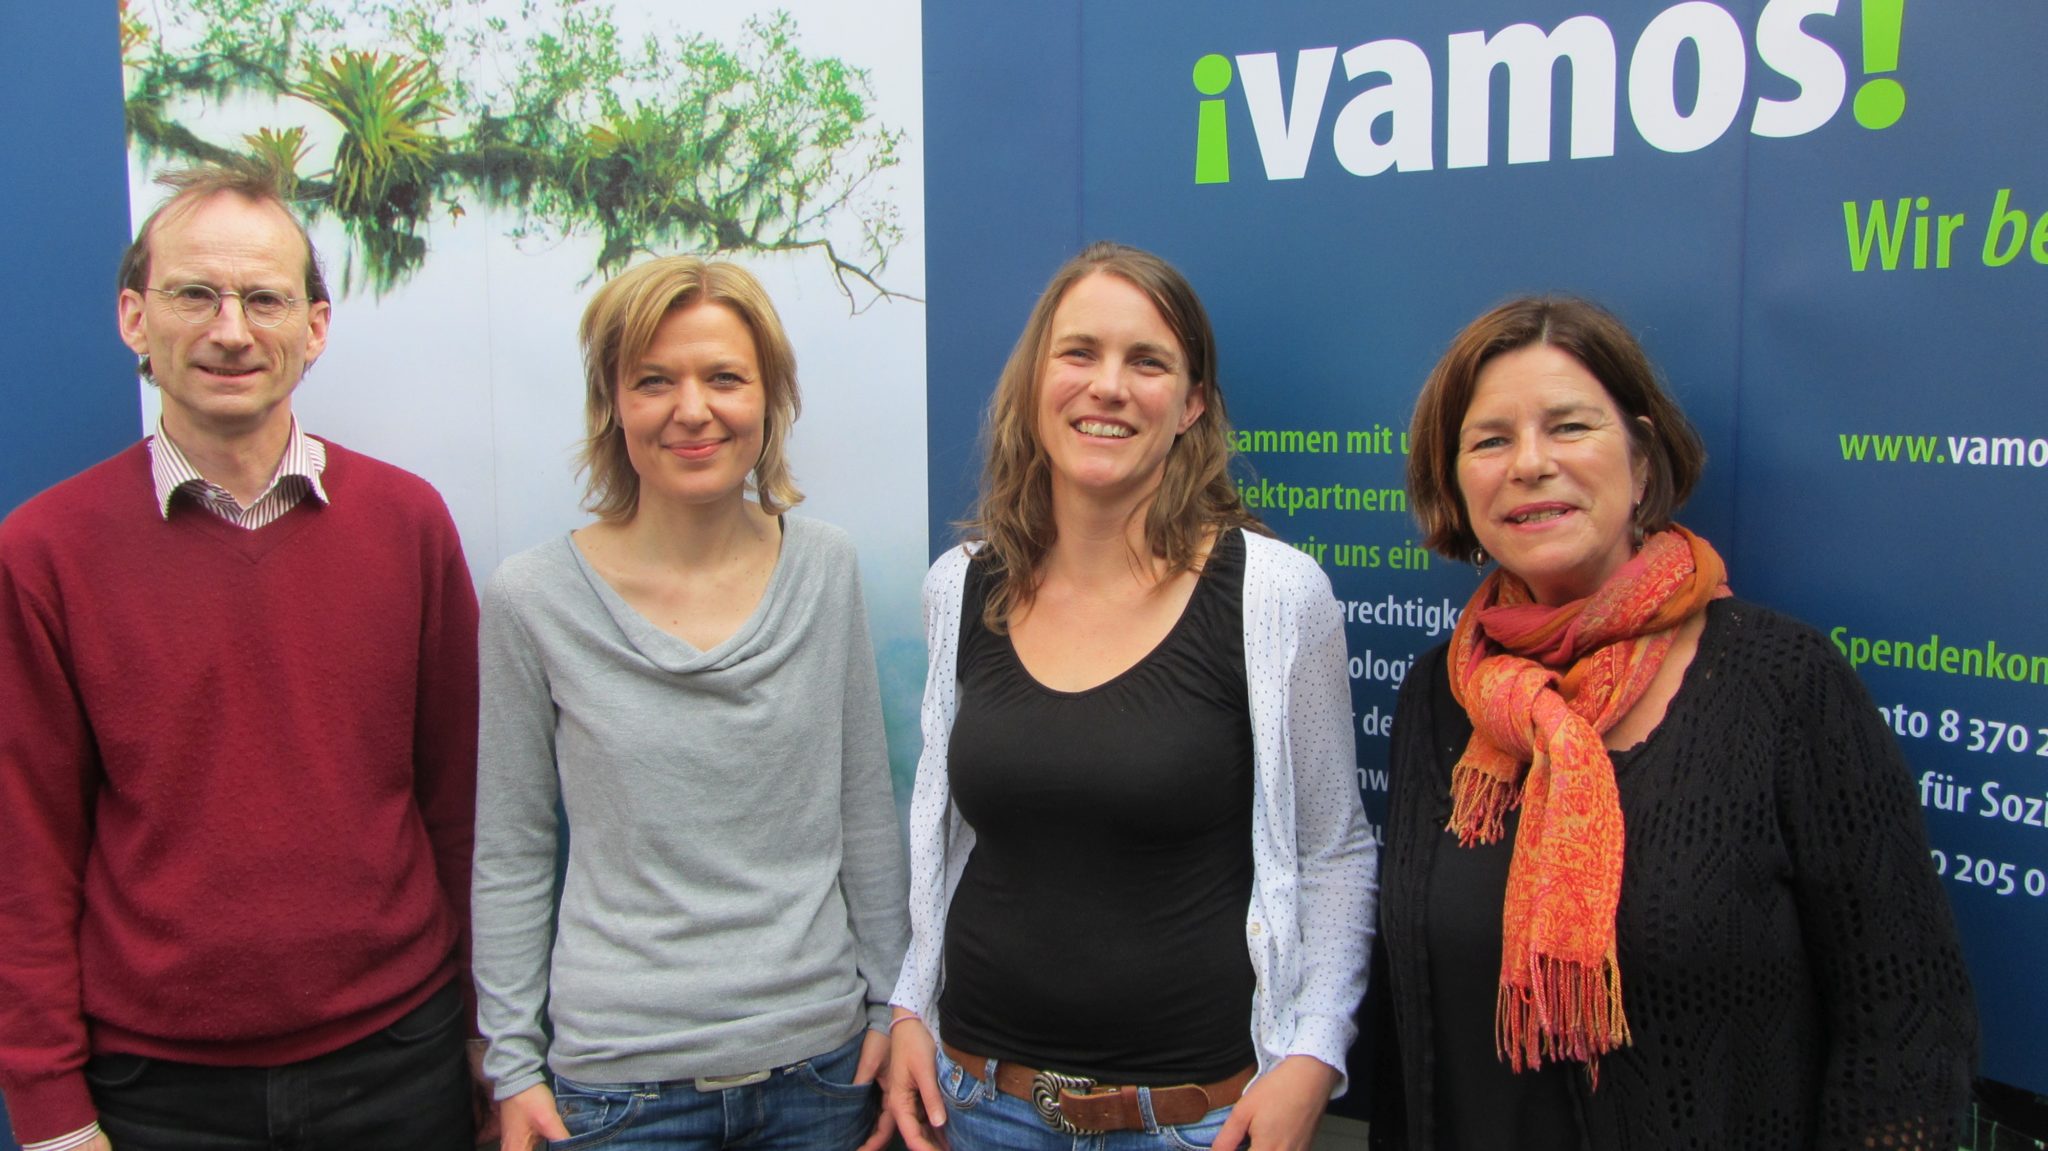 Foto vom Vamos Vorstand, vier Personen vor einem Werbebanner von Vamos